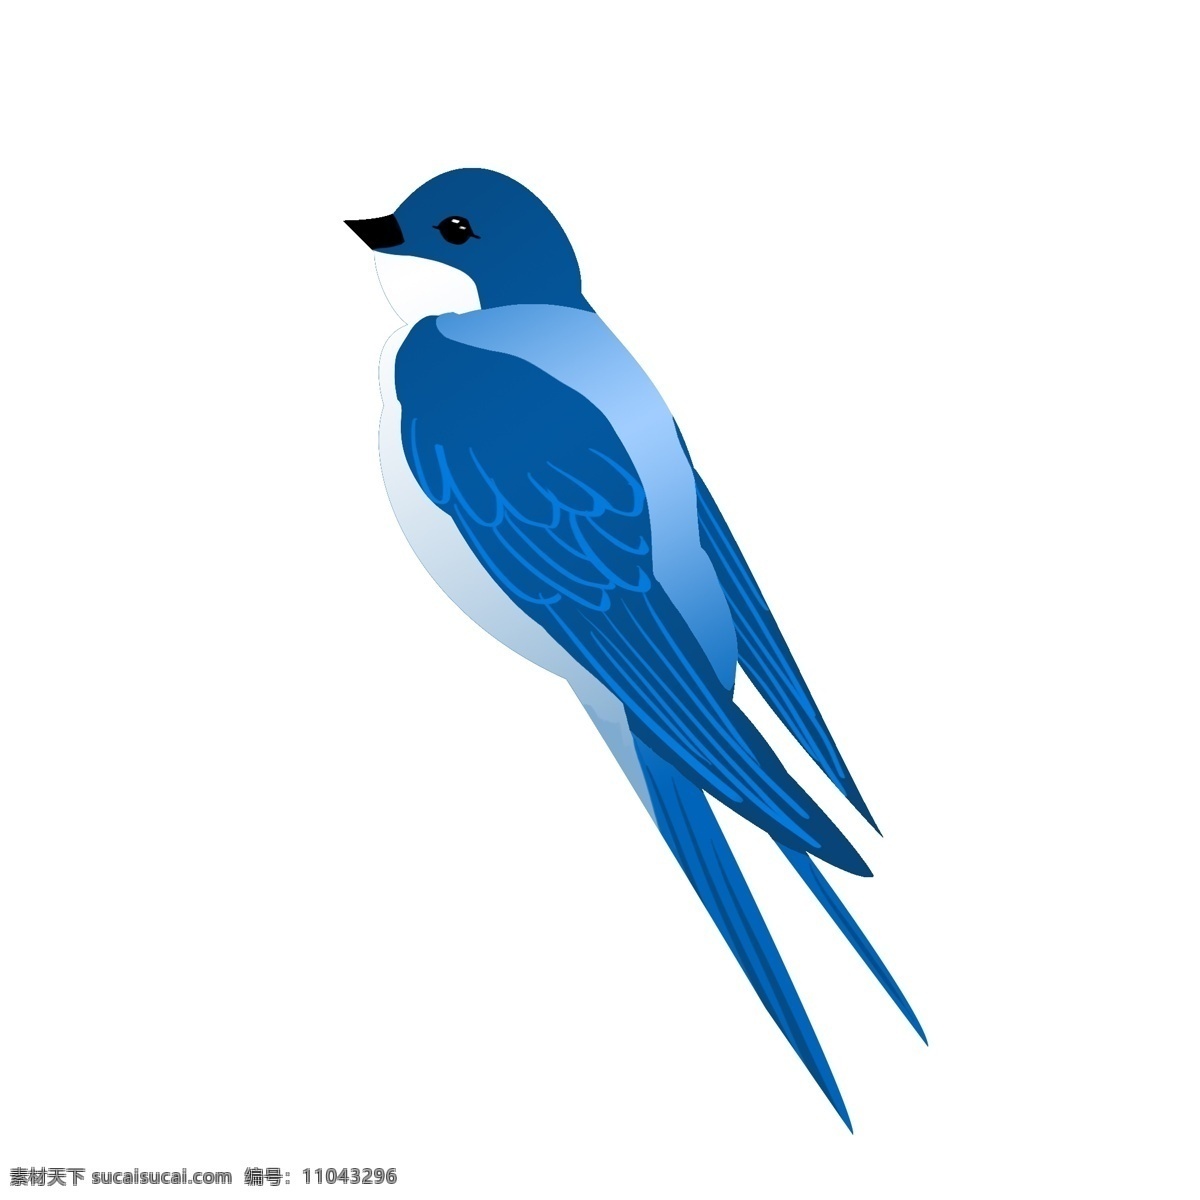 卡通 蓝色 飞翔 燕子 鸟 插图 插画 飞燕 卡通插图 创意卡通 春季燕子 飞翔的小鸟 蓝色燕子